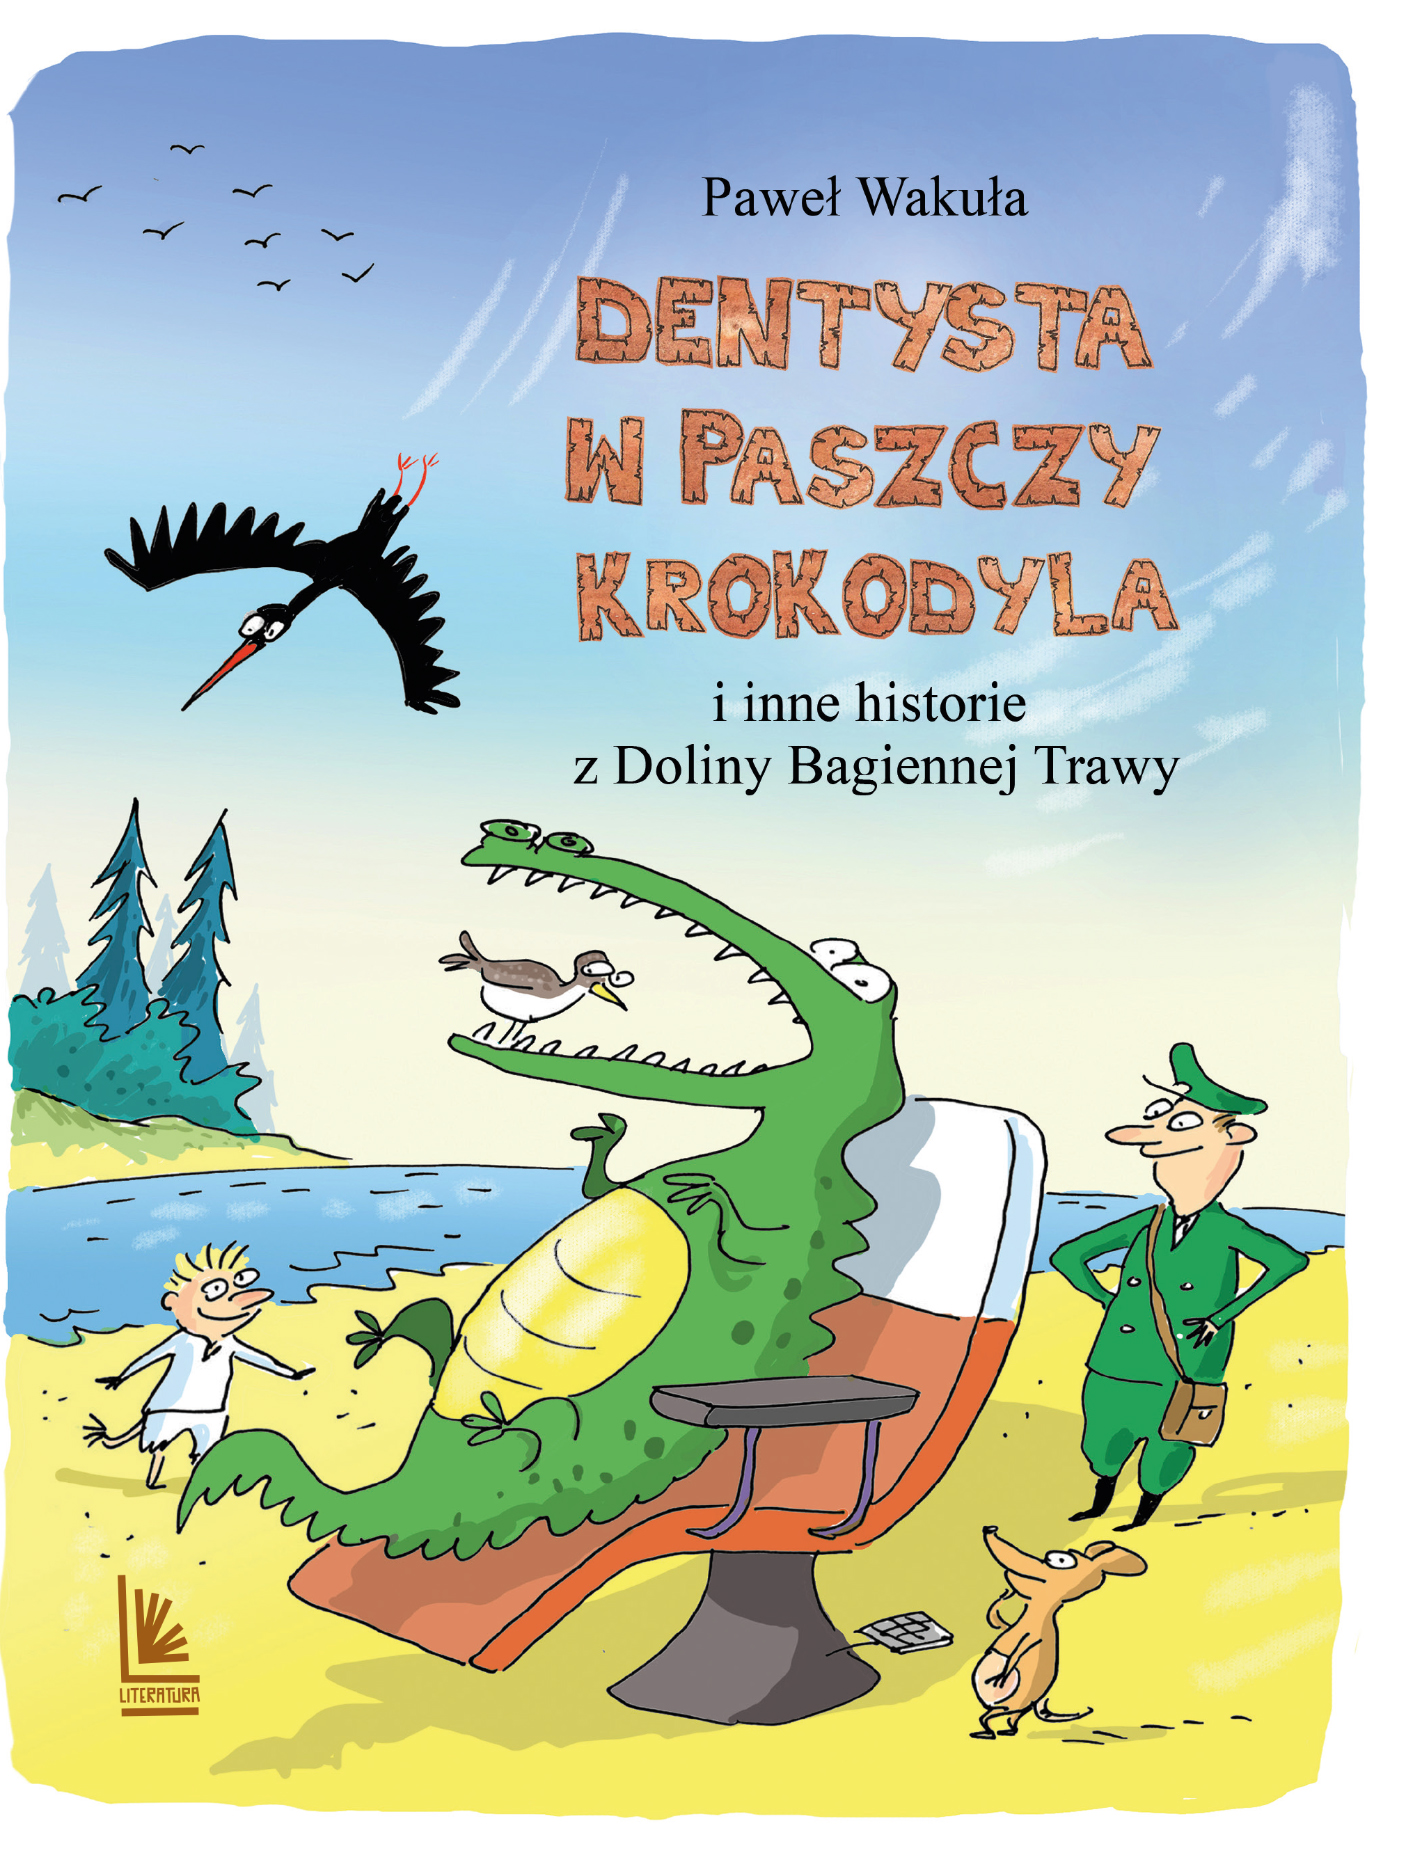 Скачать Dentysta w paszczy krokodyla - Paweł Wakuła